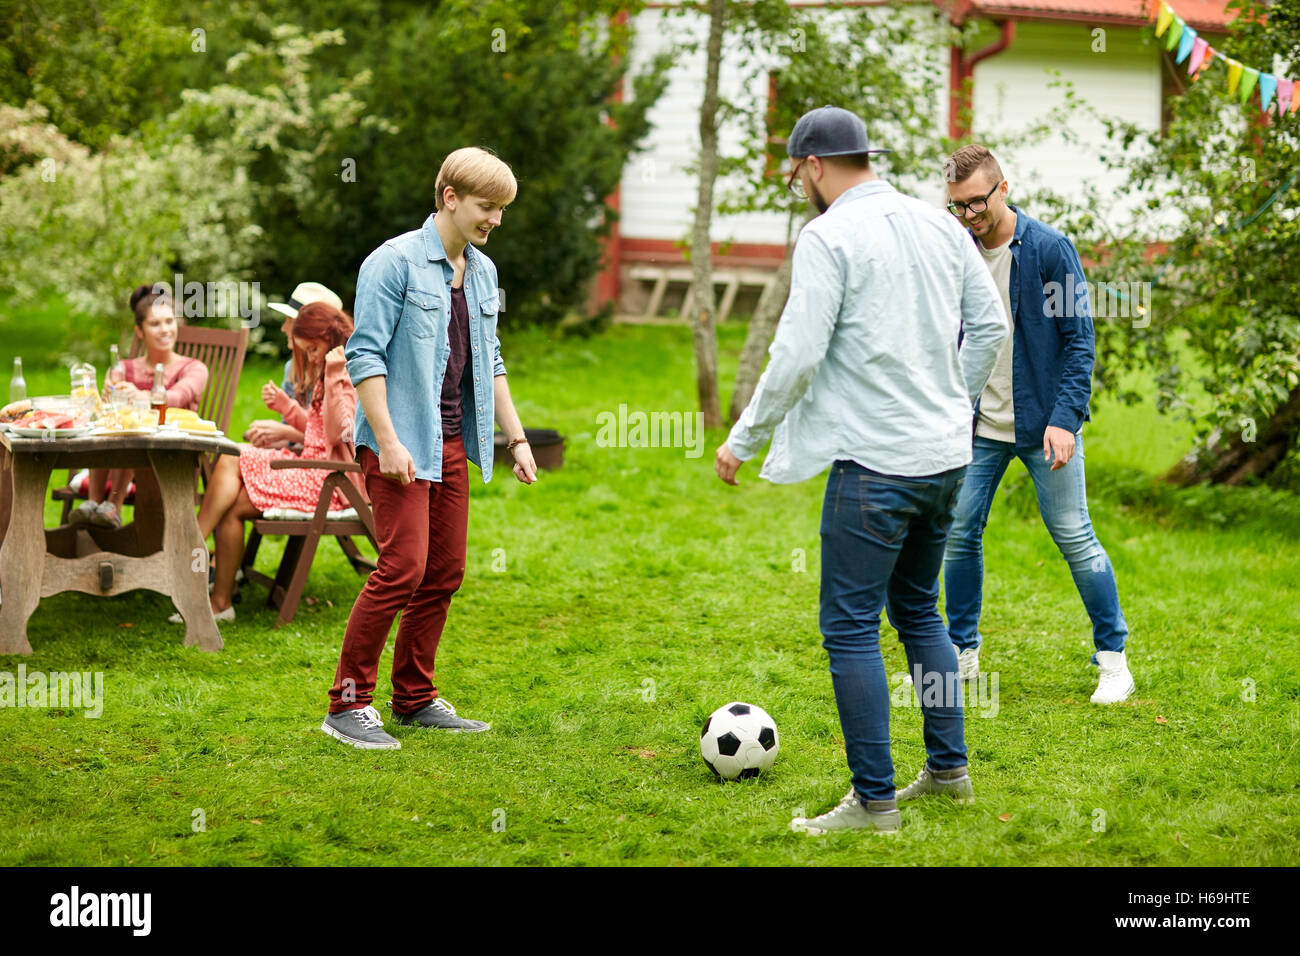 Во что поиграть с друзьями 3 человека. Друзья играют в футбол. Фото друзей играющих в футбол. Счастливые друзья играют в футбол. Приглашаем поиграть в футбол с друзьями.